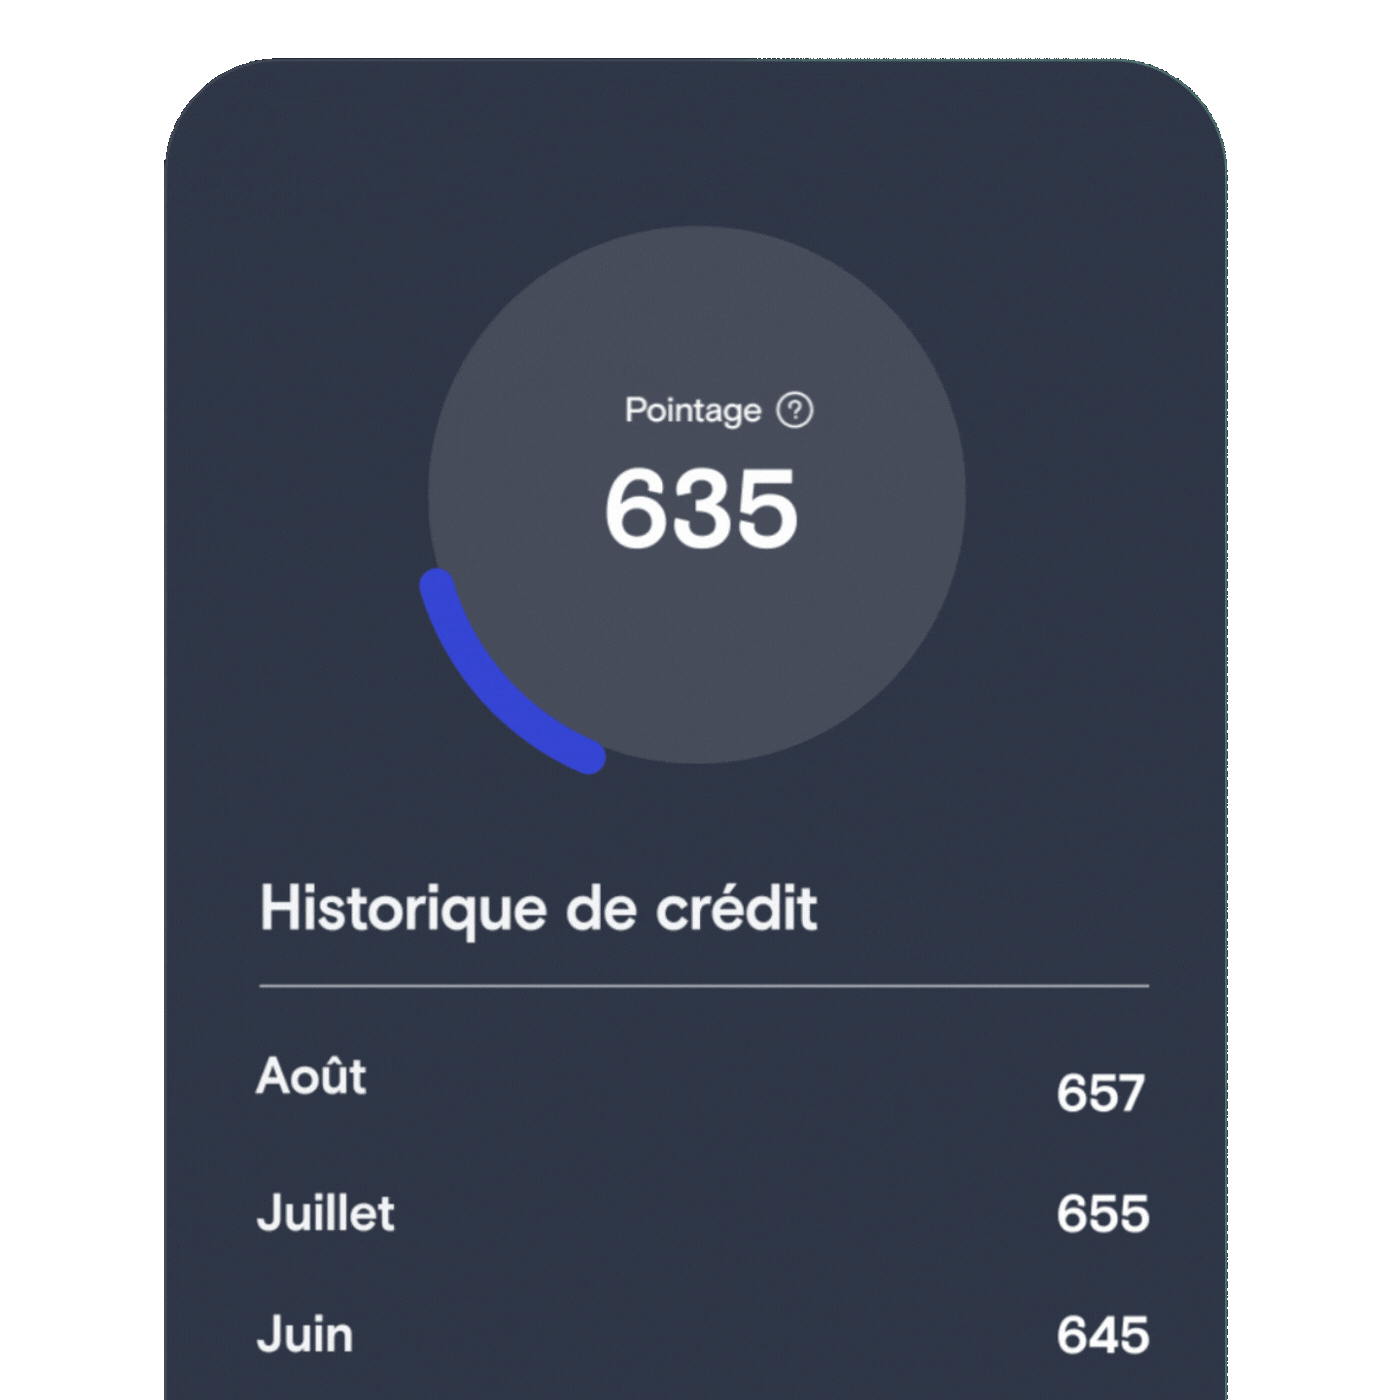 Graphique de l'application KOHO montrant un score de crédit augmentant de 50 points après l'utilisation de la fonction de Renforcement de Crédit